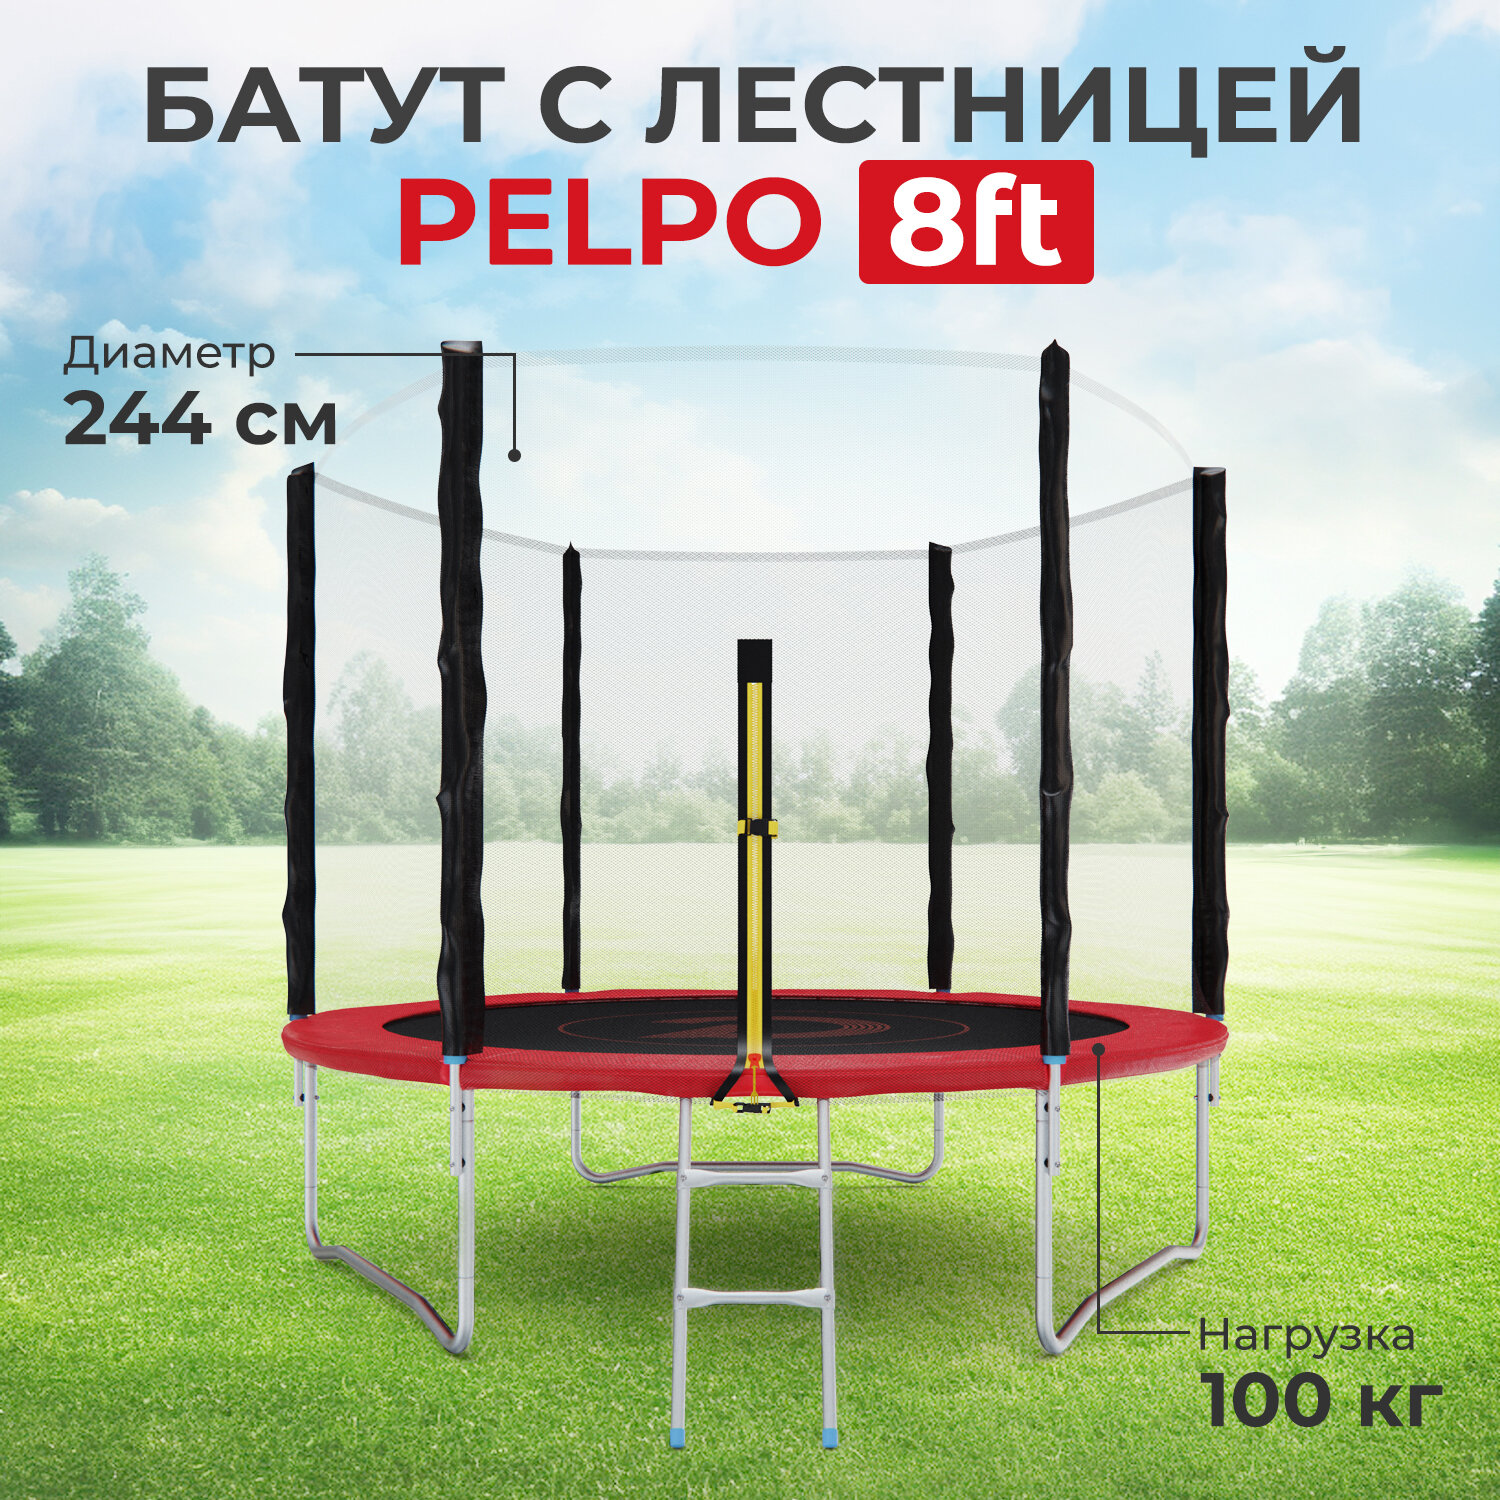 Детский каркасный батут DFC Pelpo 8 футов с лестницей и защитной сеткой, красный, 244 см, нагрузка 100 кг